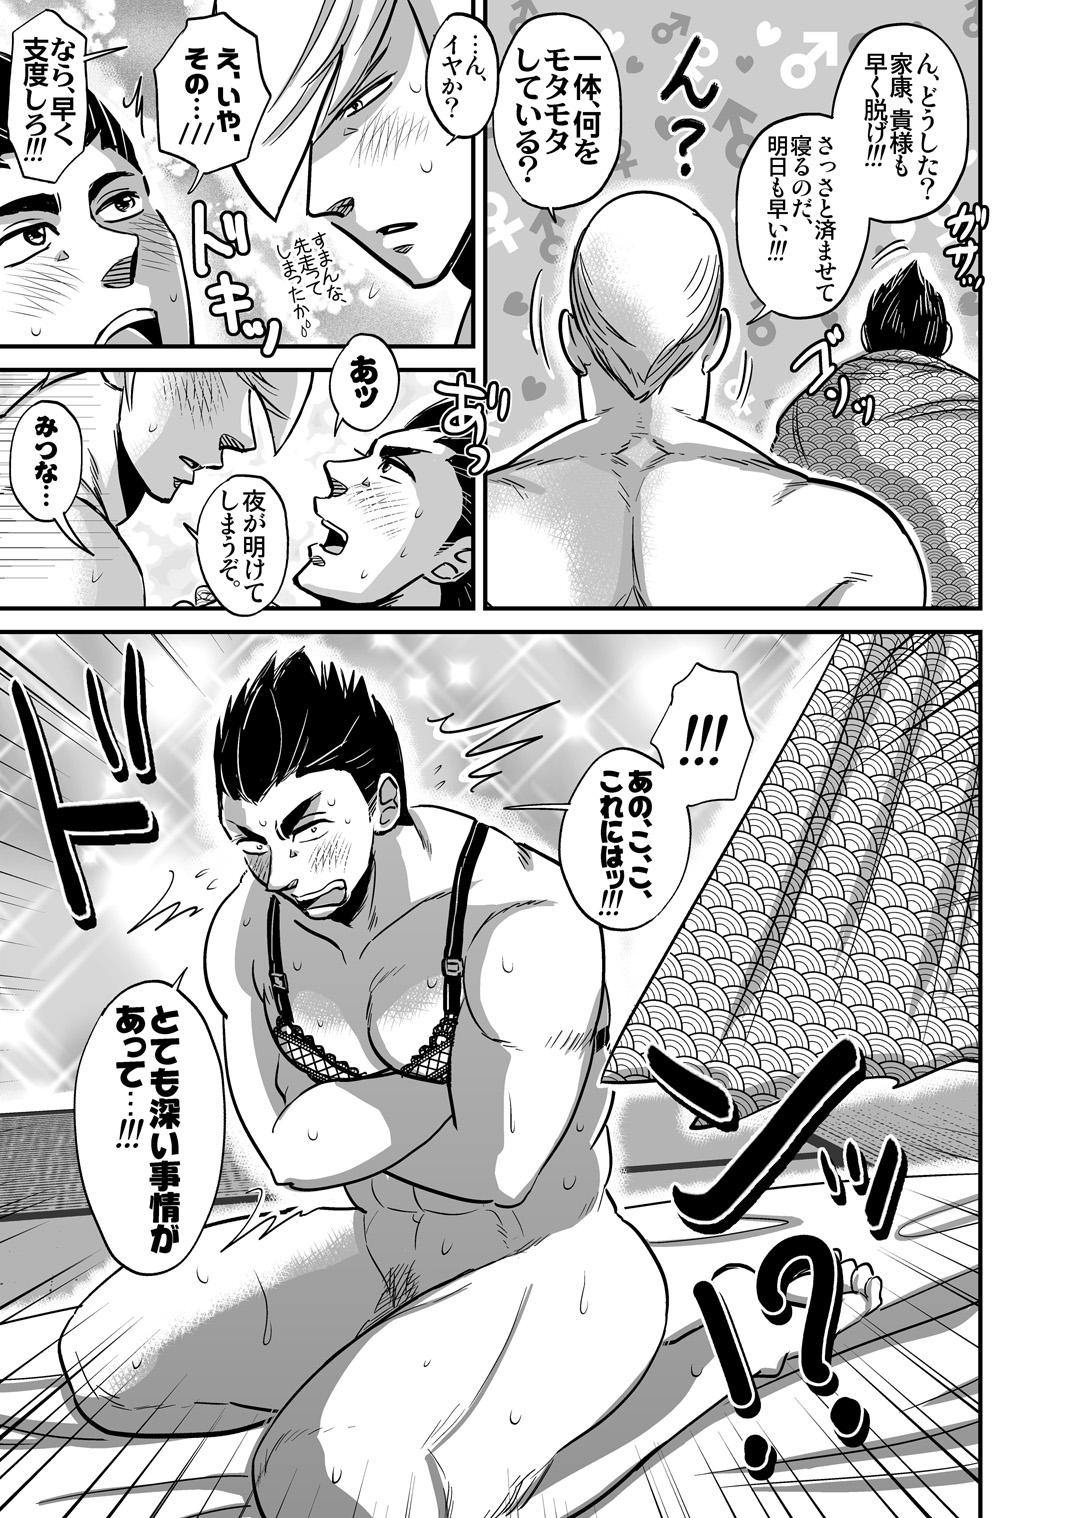 Argentino Multi-HOMO manga at home - Sengoku basara Shorts - Page 6